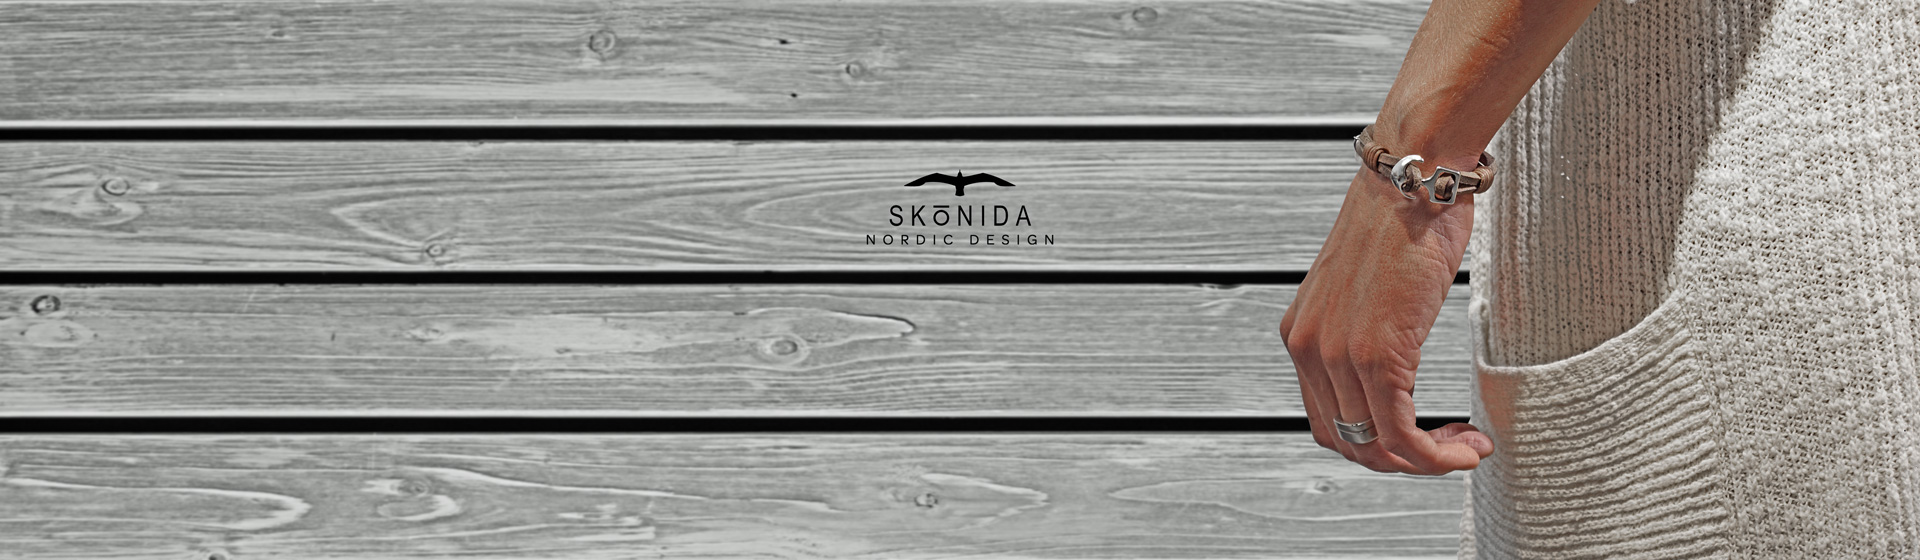 SKONIDA Nordic Design Jewellery and Accessoires maritim